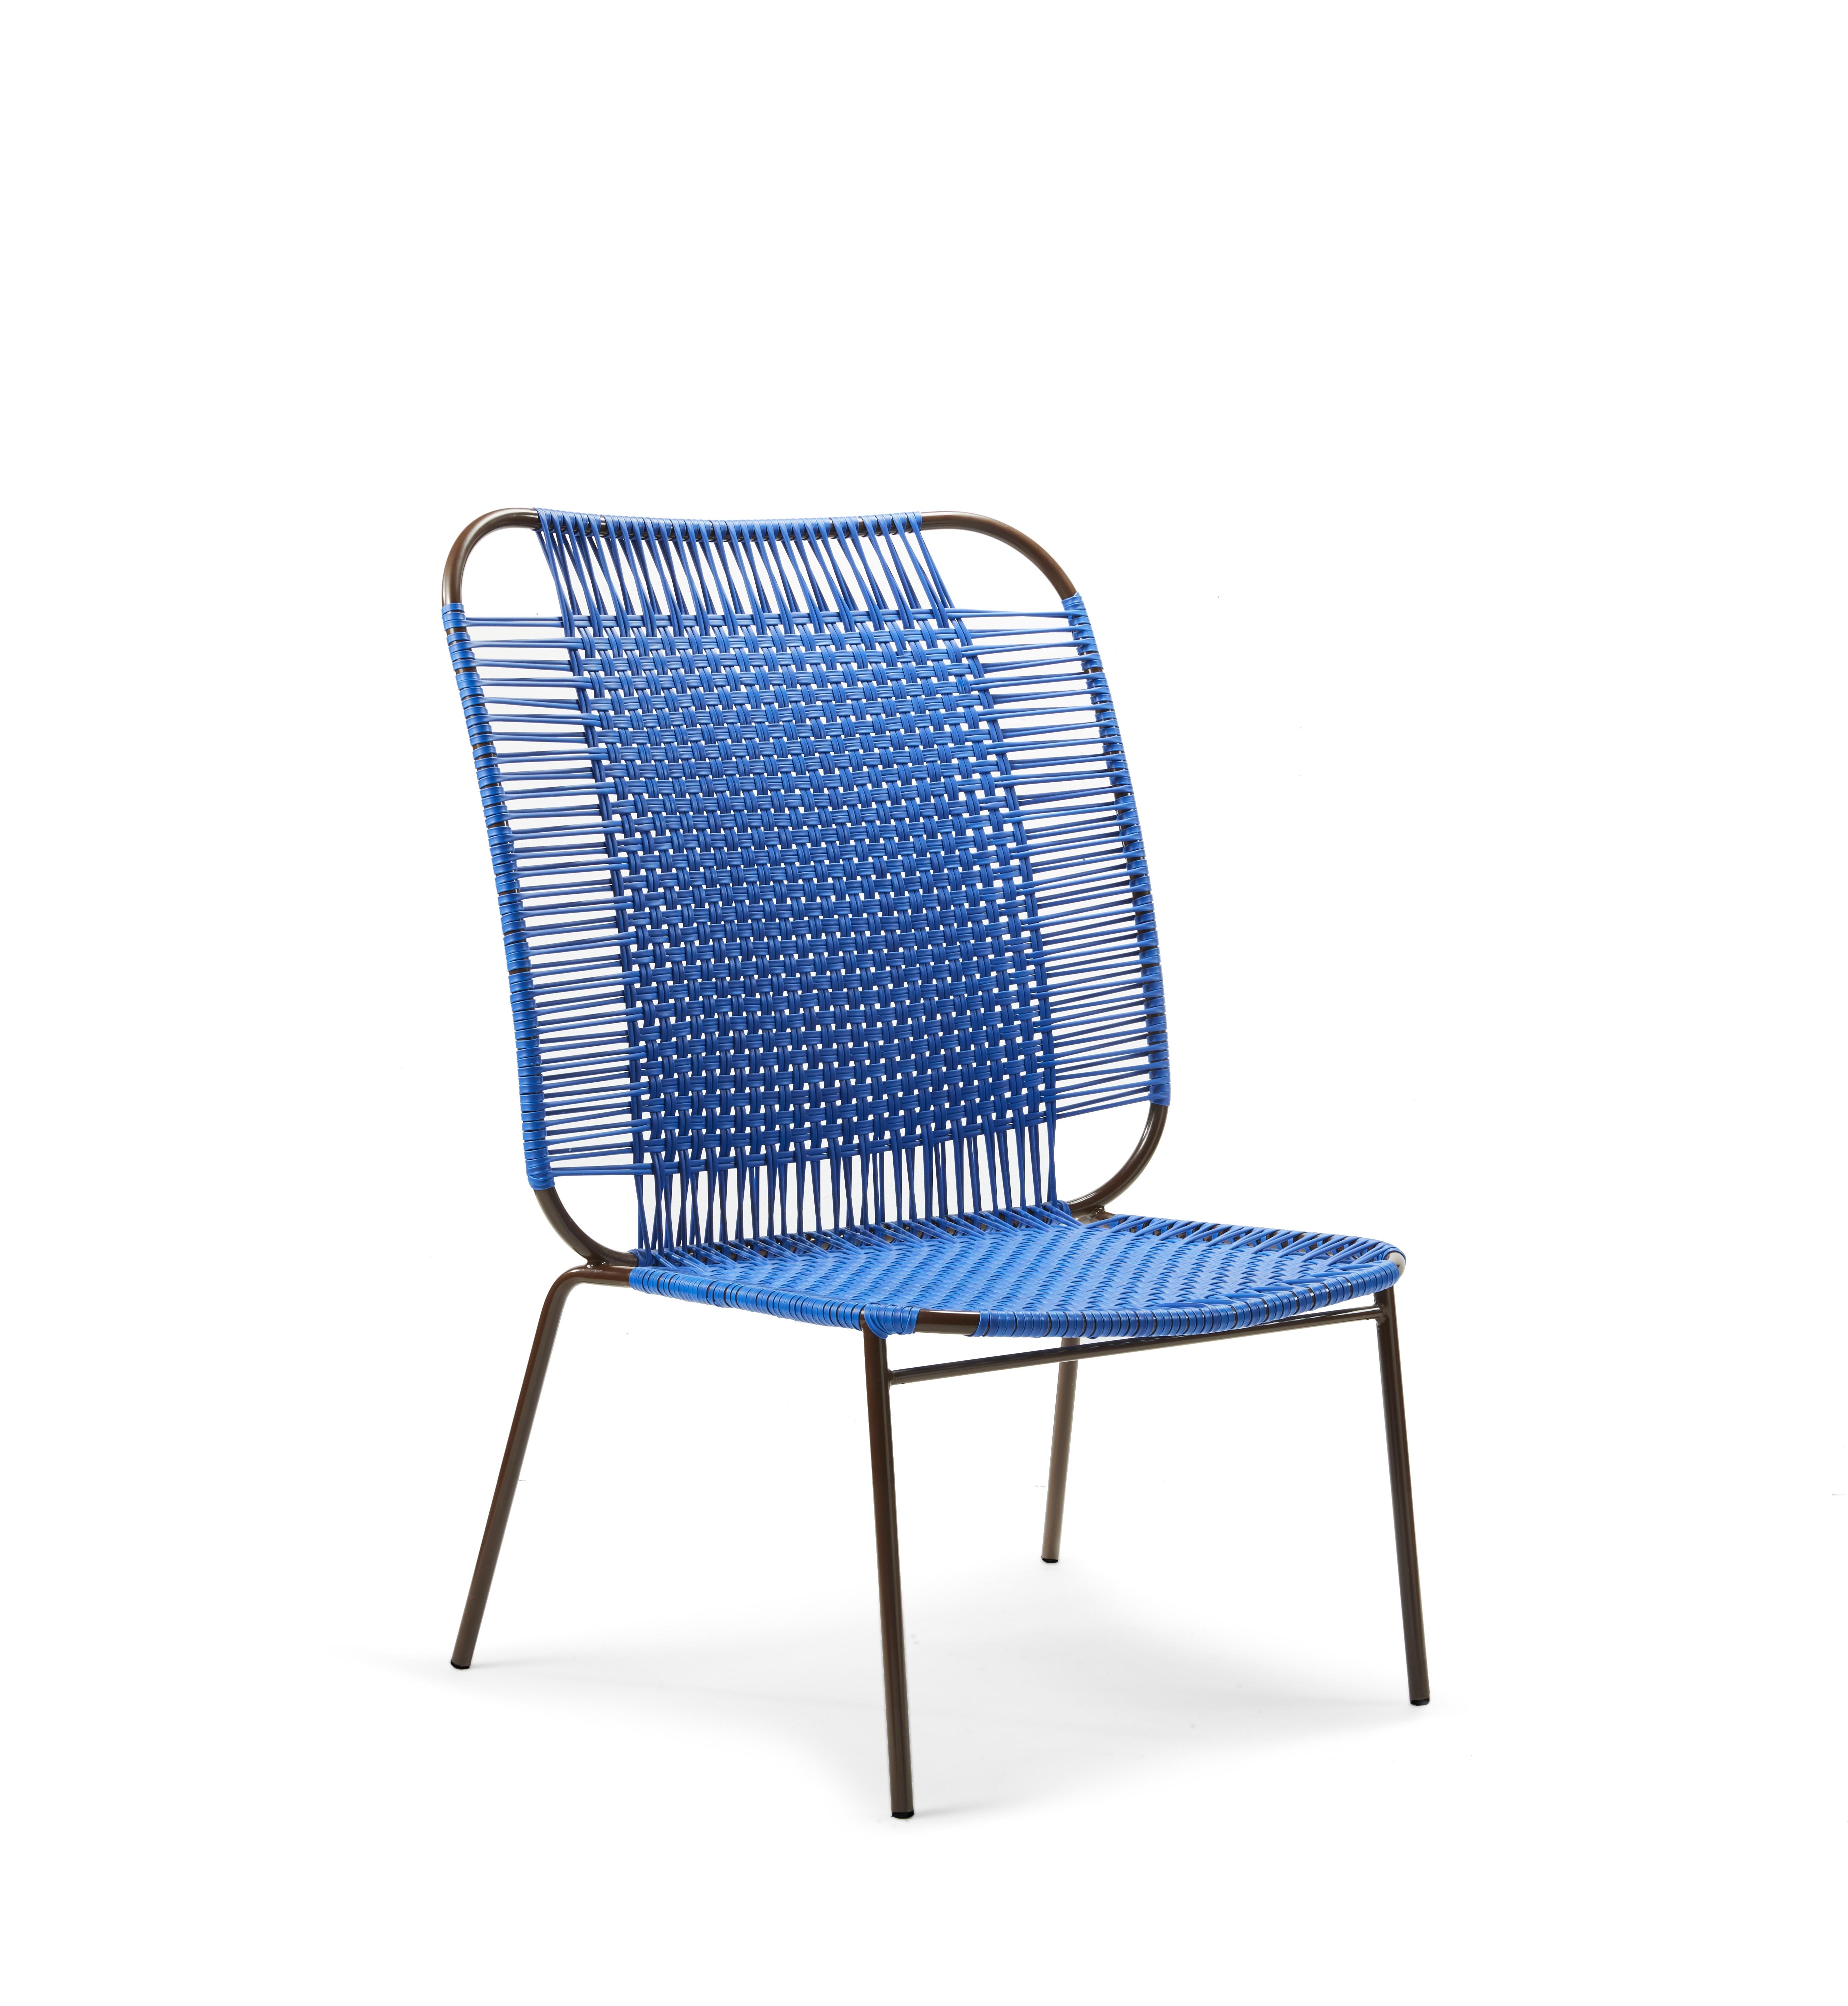 Chaise haute de salon Blue Cielo de Sebastian Herkner
Matériaux : Tubes d'acier galvanisés et revêtus de poudre. Les cordes en PVC sont fabriquées à partir de plastique recyclé.
Technique : Fabriqué à partir de plastique recyclé et tissé par des